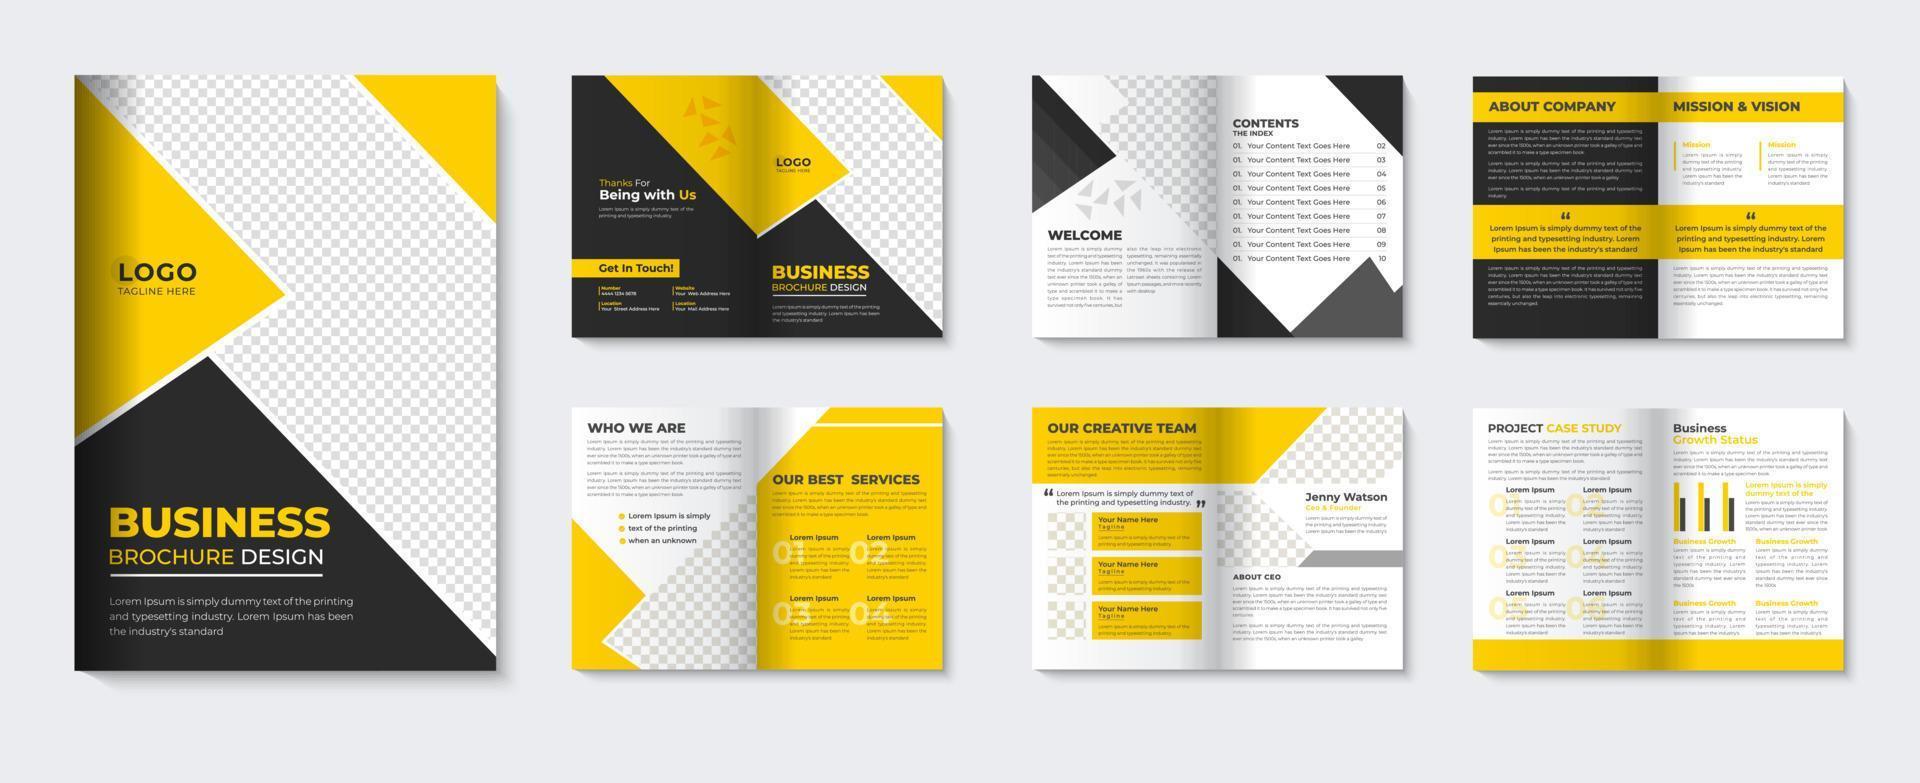 plantilla de folleto corporativo y diseño de portada amarilla de perfil de empresa de folleto minimalista vector